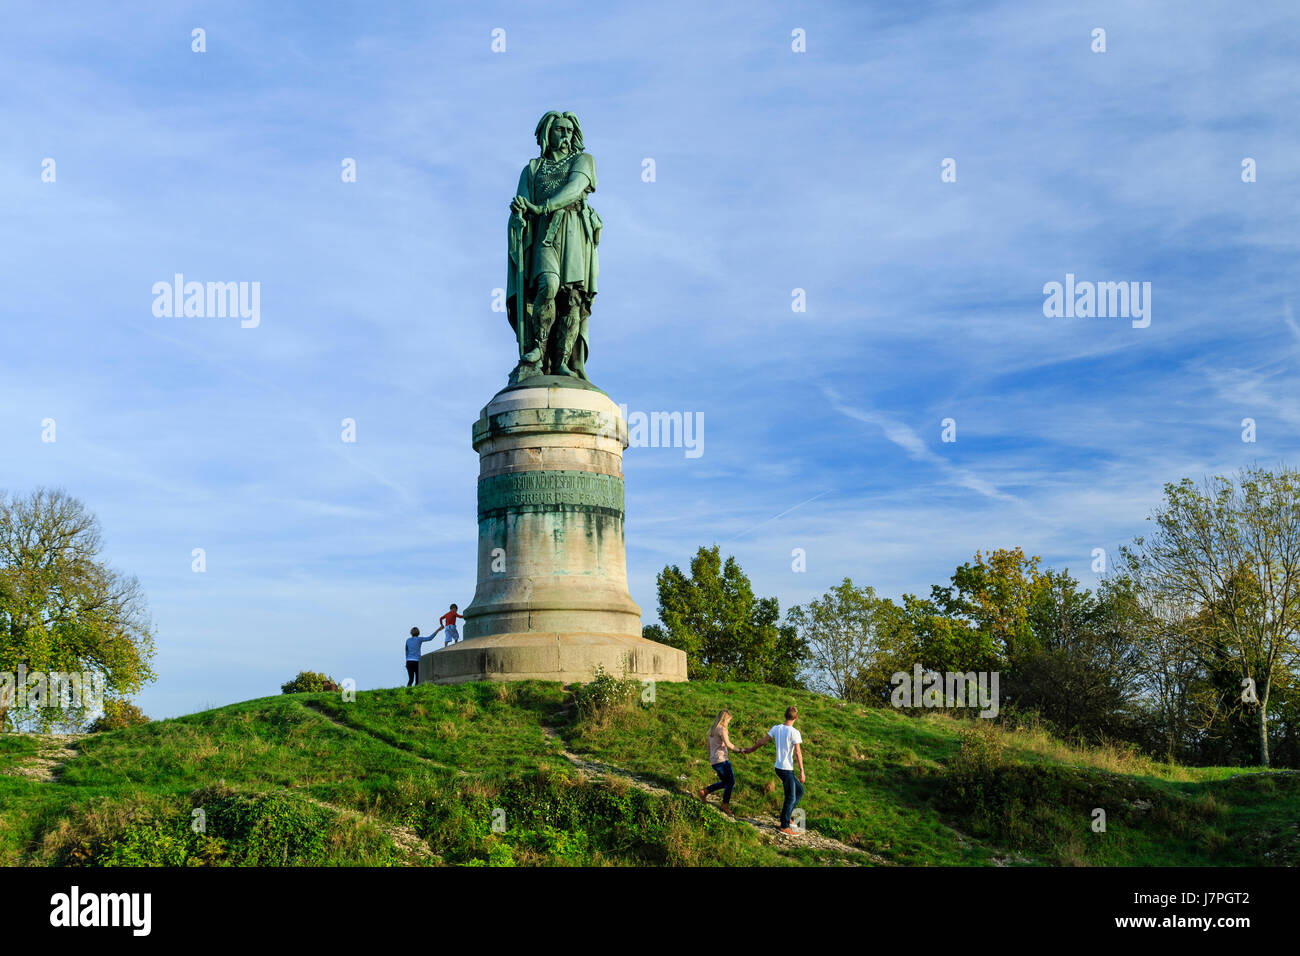 France, Cote d'Or, Alise-Sainte-Reine, Vercingetorix statue atop Mount Auxois by the sculptor Aime Millet Stock Photo